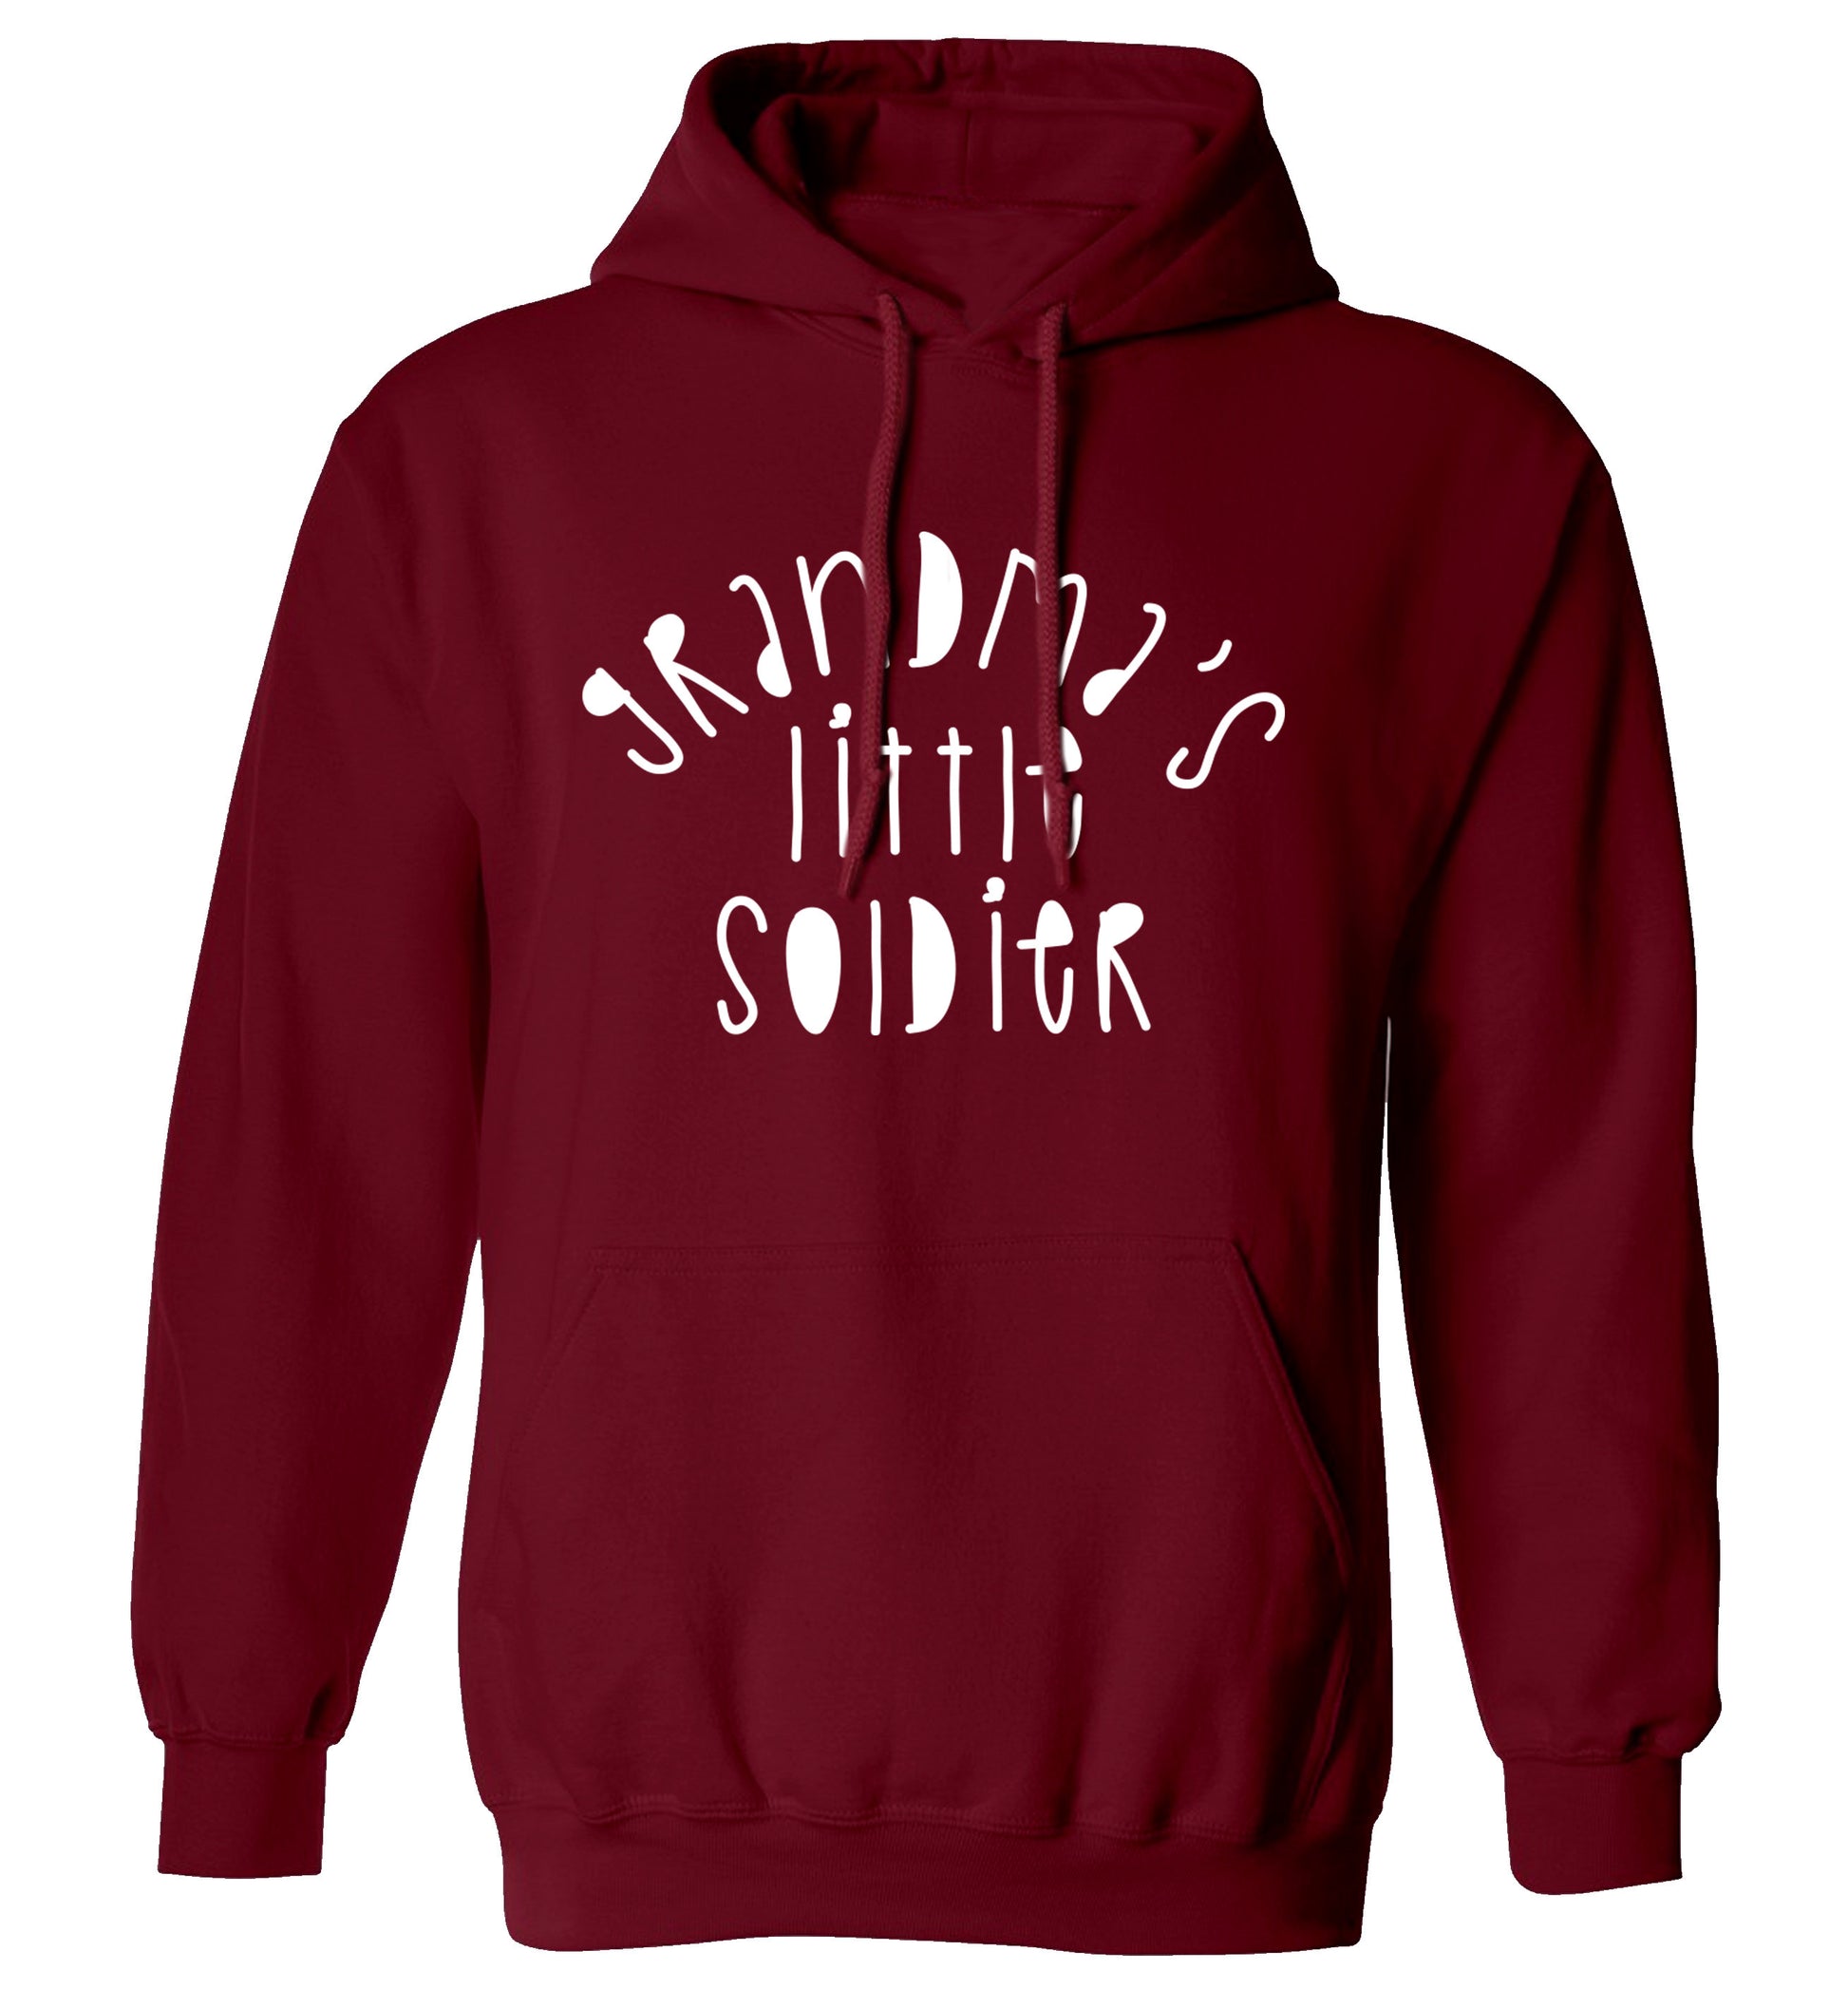 Grandma's little soldier adults unisex maroon hoodie 2XL